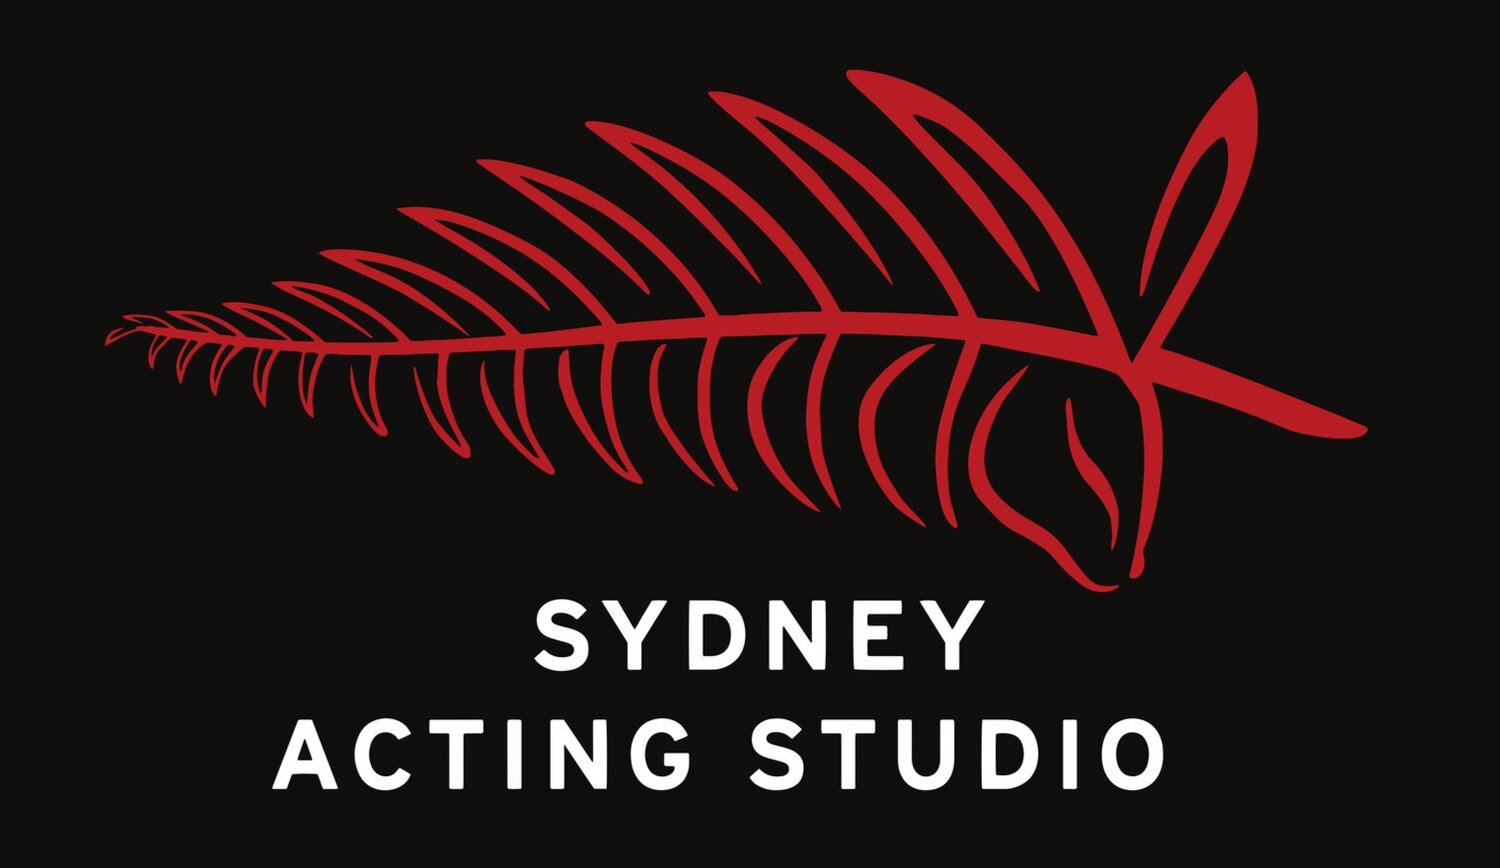 Sydney Acting Studio